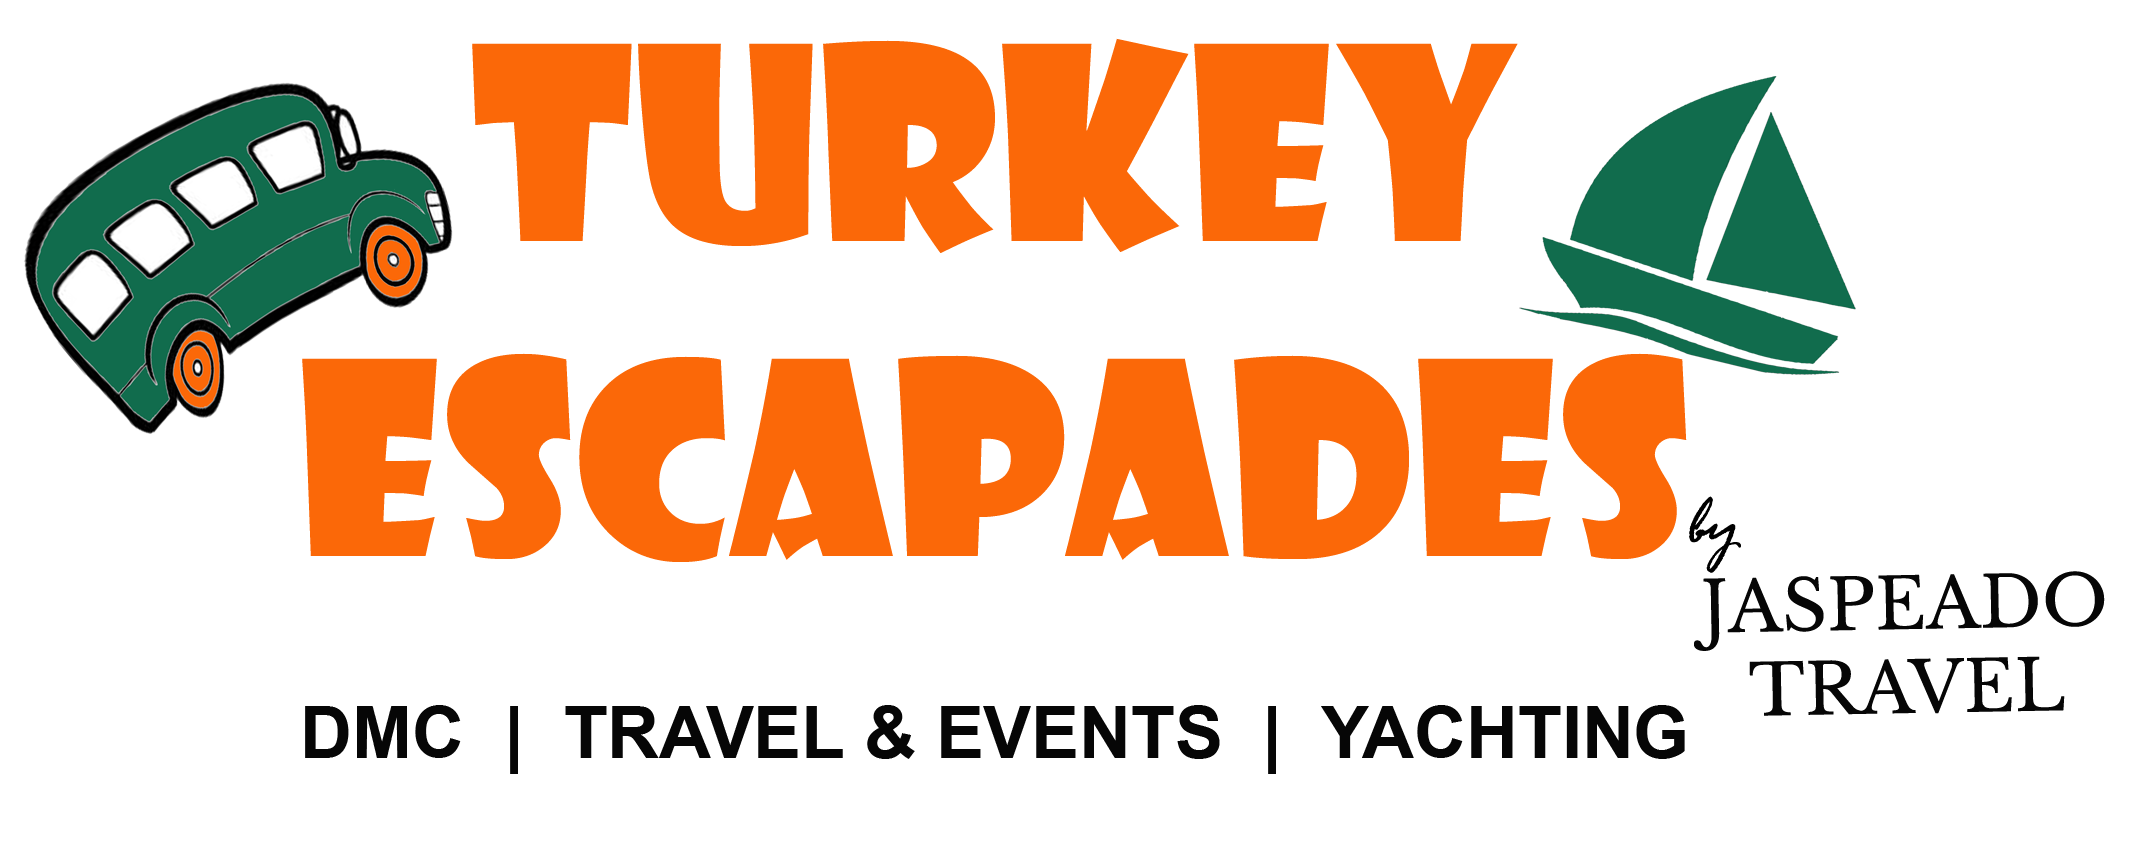 Turkey Escapades | 10 Days Turkey Escapades Tour - Turkey Escapades